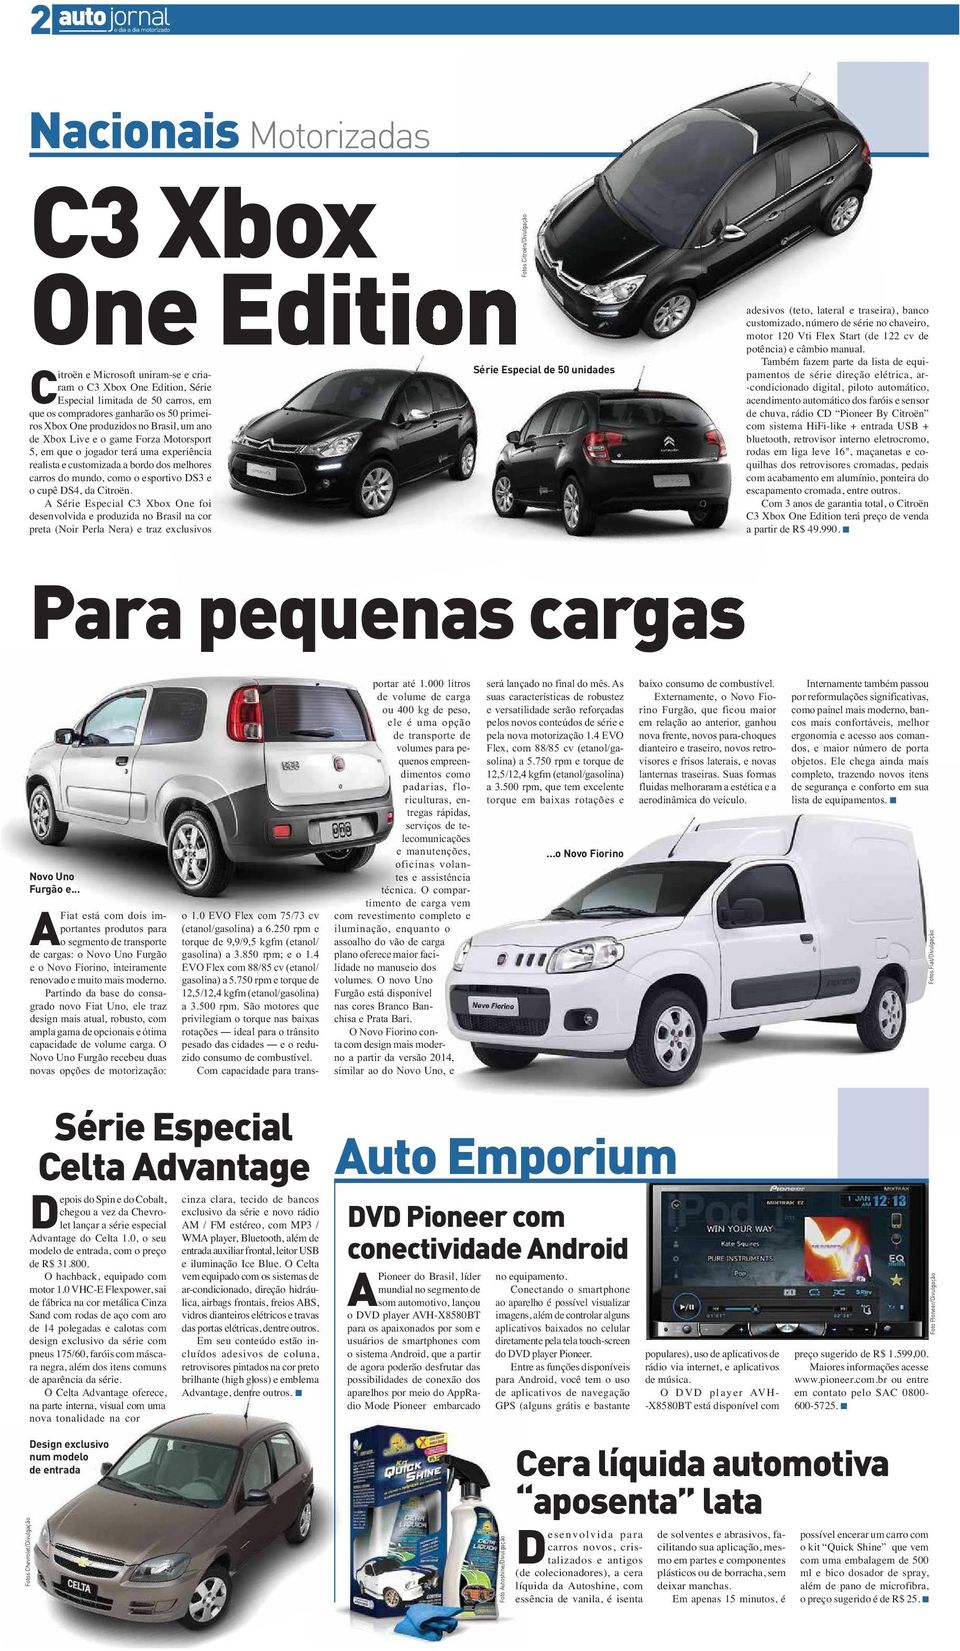 cupê DS4, da Citroën. Série Especial C3 Xbox One foi desenvolvida e produzida no Brasil na cor preta (Noir Perla Nera) e traz exclusivos Novo Uno Furgão e.